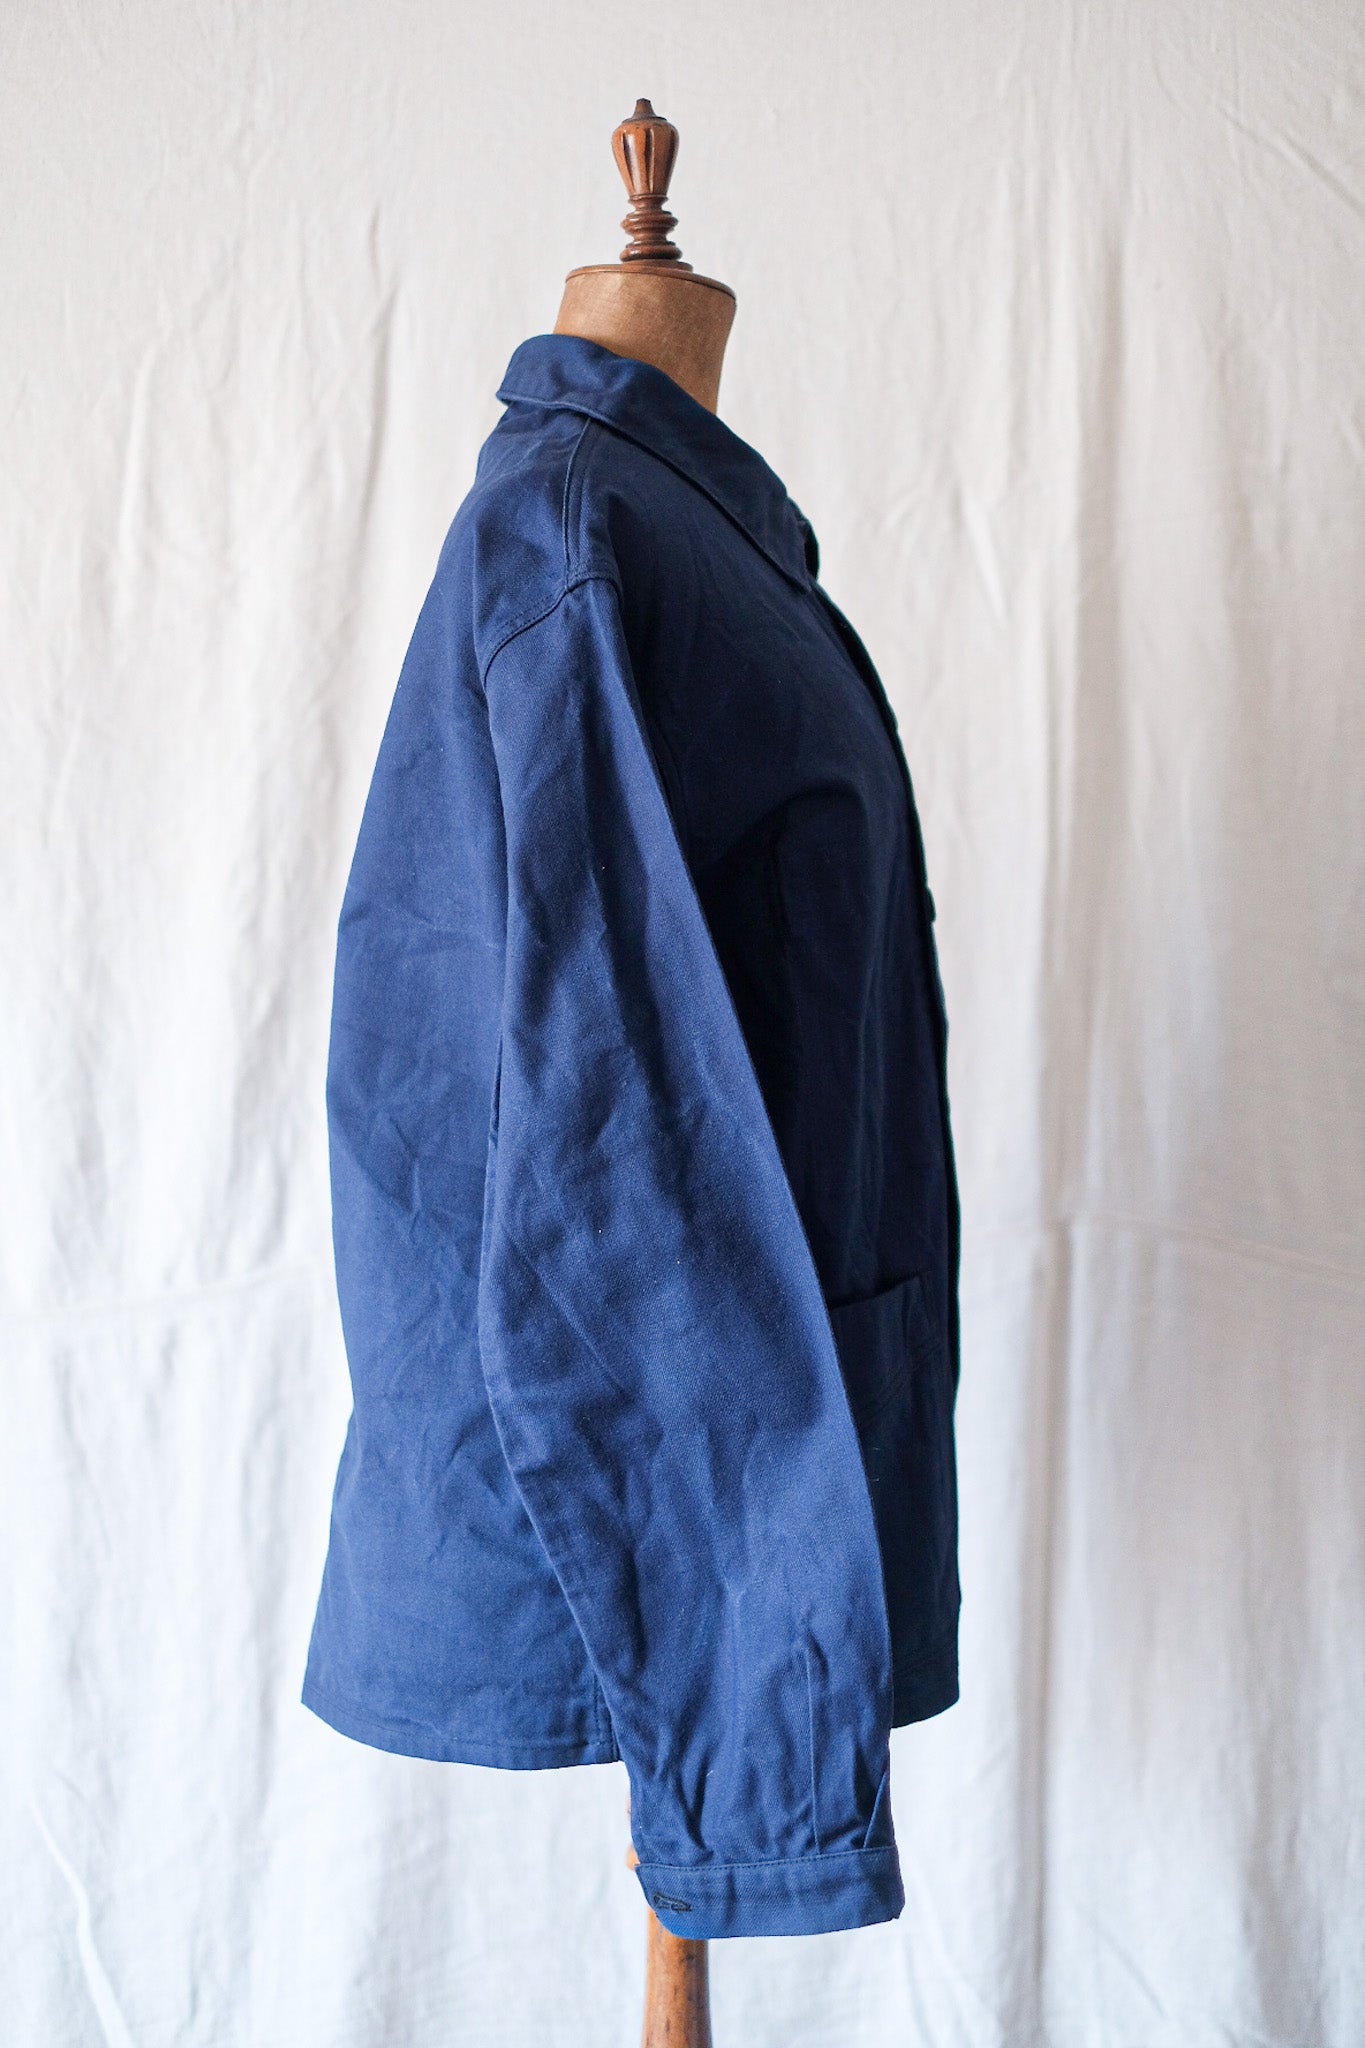 [~ 50's] French Vintage Blue Cotton Twil Work Jacket "Le Mont St. Michel"